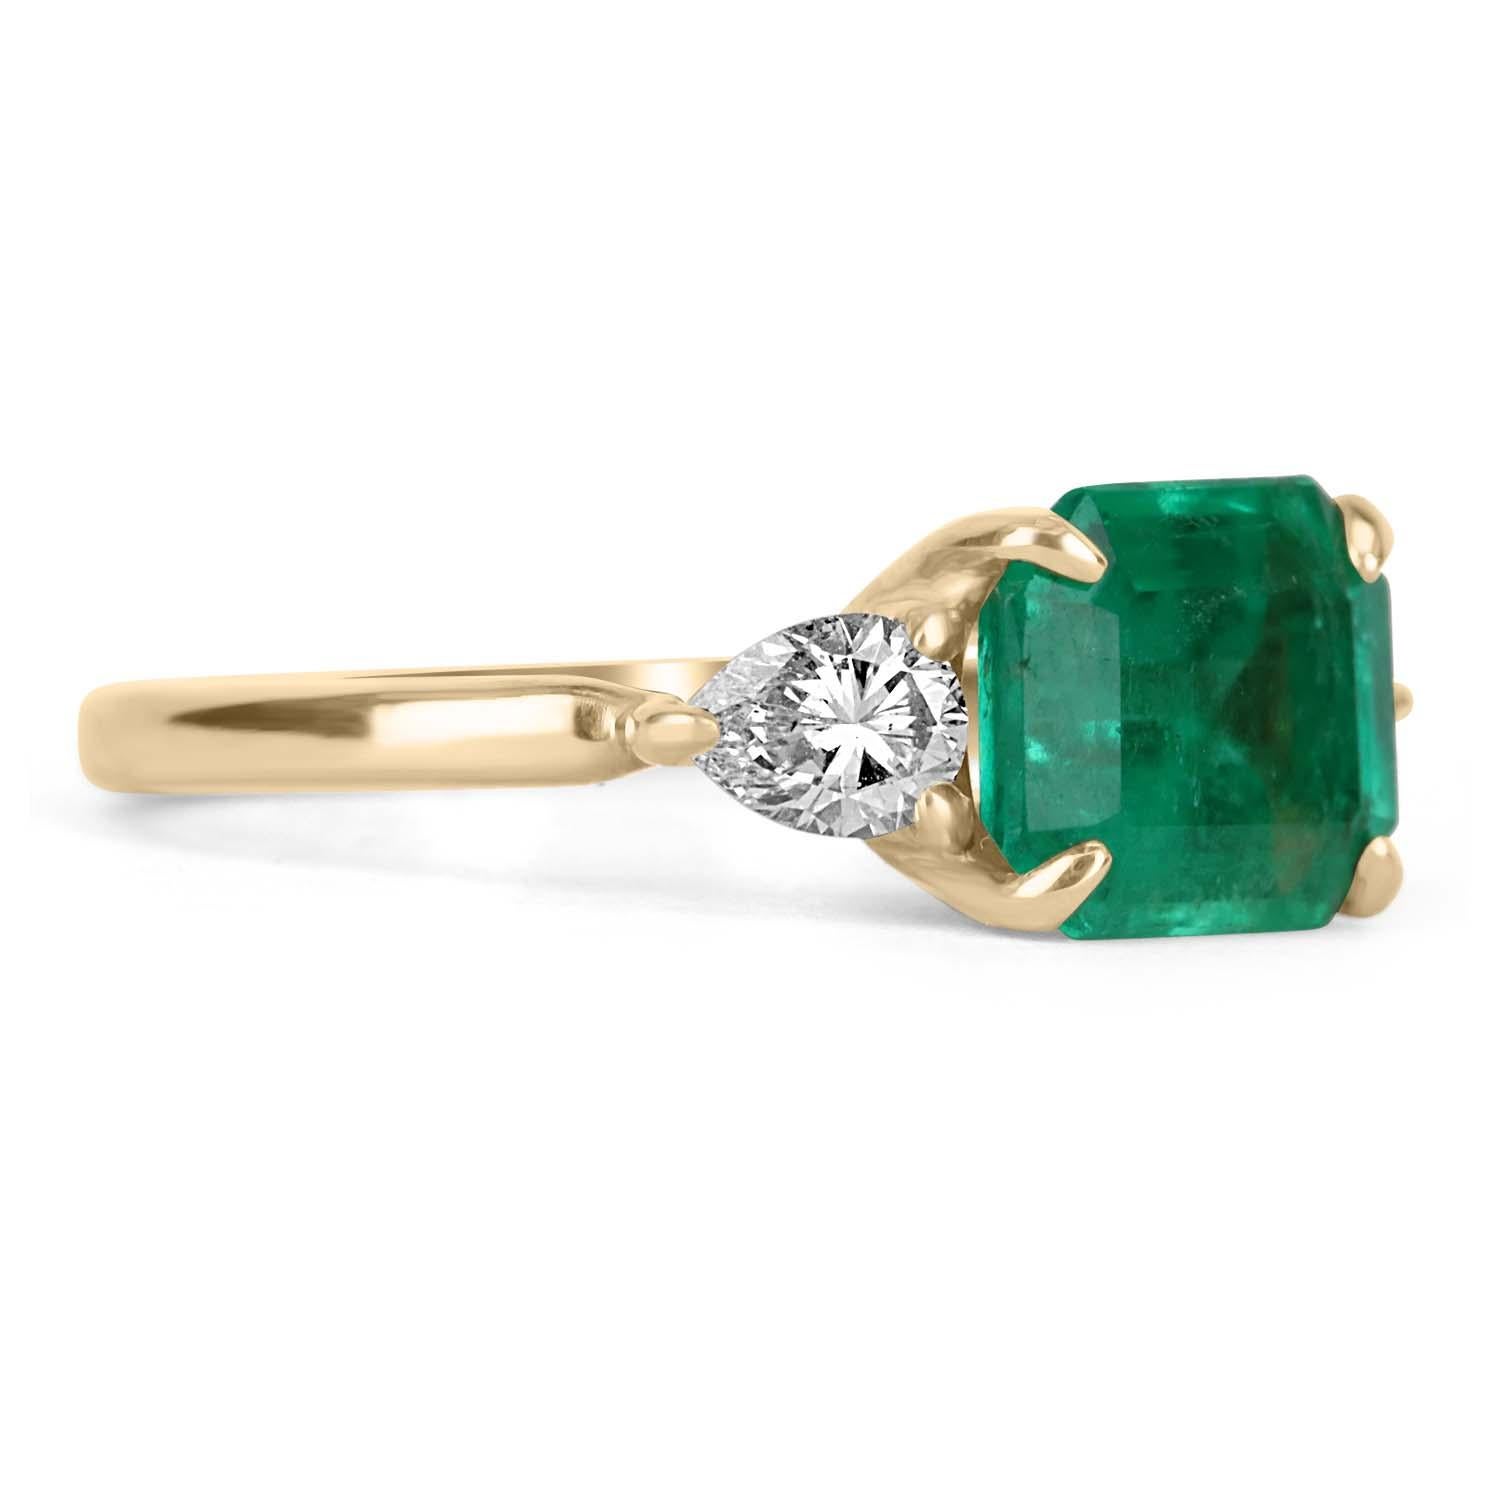 Es handelt sich um einen kolumbianischen Smaragd- und Diamantring mit drei Steinen zur Verlobung oder für die rechte Hand. Ein außergewöhnlicher Ring, der von JR Colombian Emeralds nach Maß gefertigt wurde. Dieser aus glänzendem 18-karätigem Gold